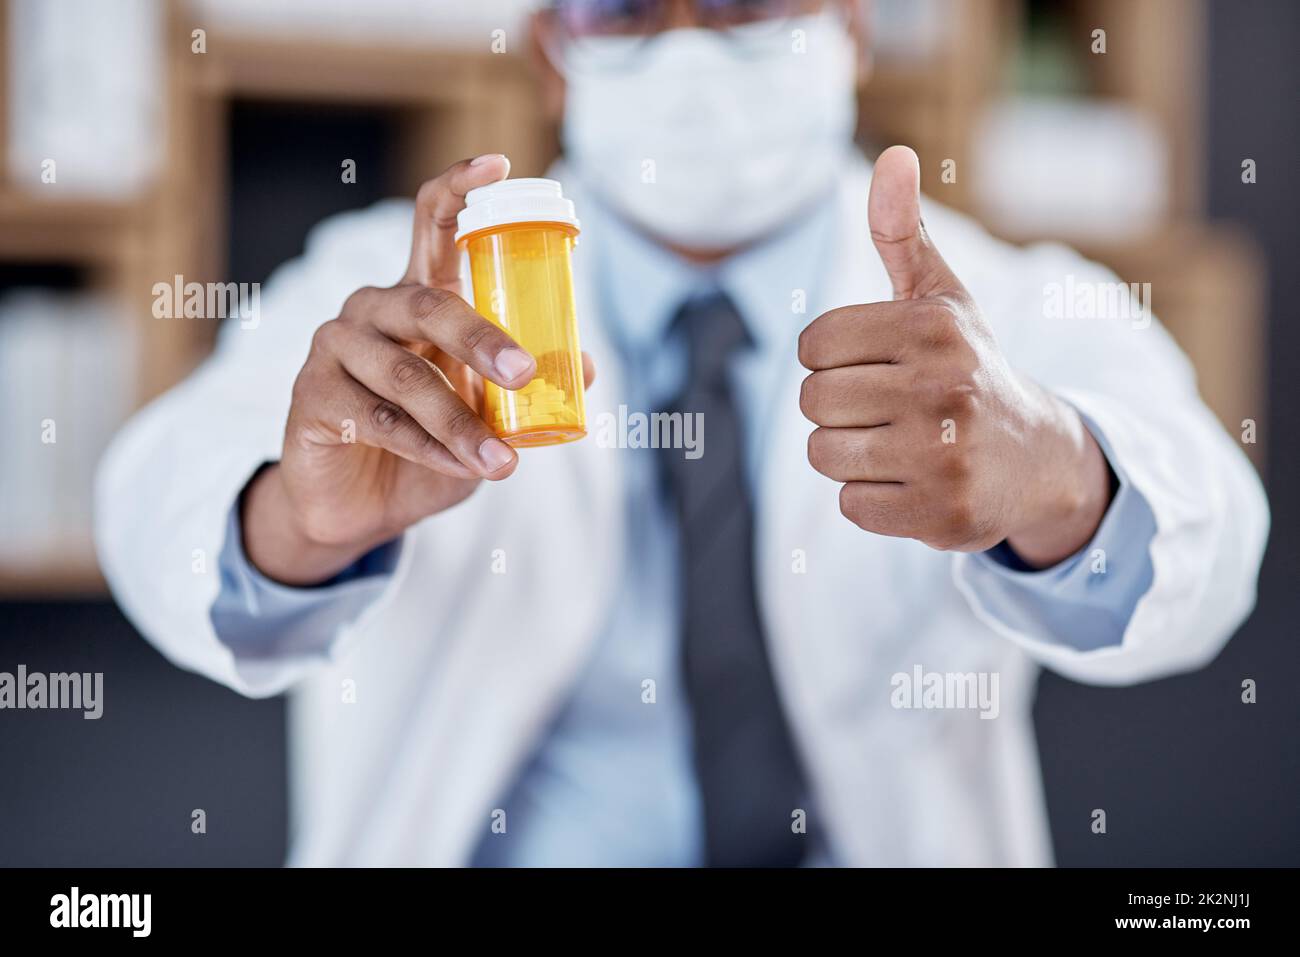 Dies wird das Problem lösen. Nahaufnahme eines nicht erkennbaren Arztes, der eine Flasche Pillen hält und Daumen in seinem Büro zeigt. Stockfoto